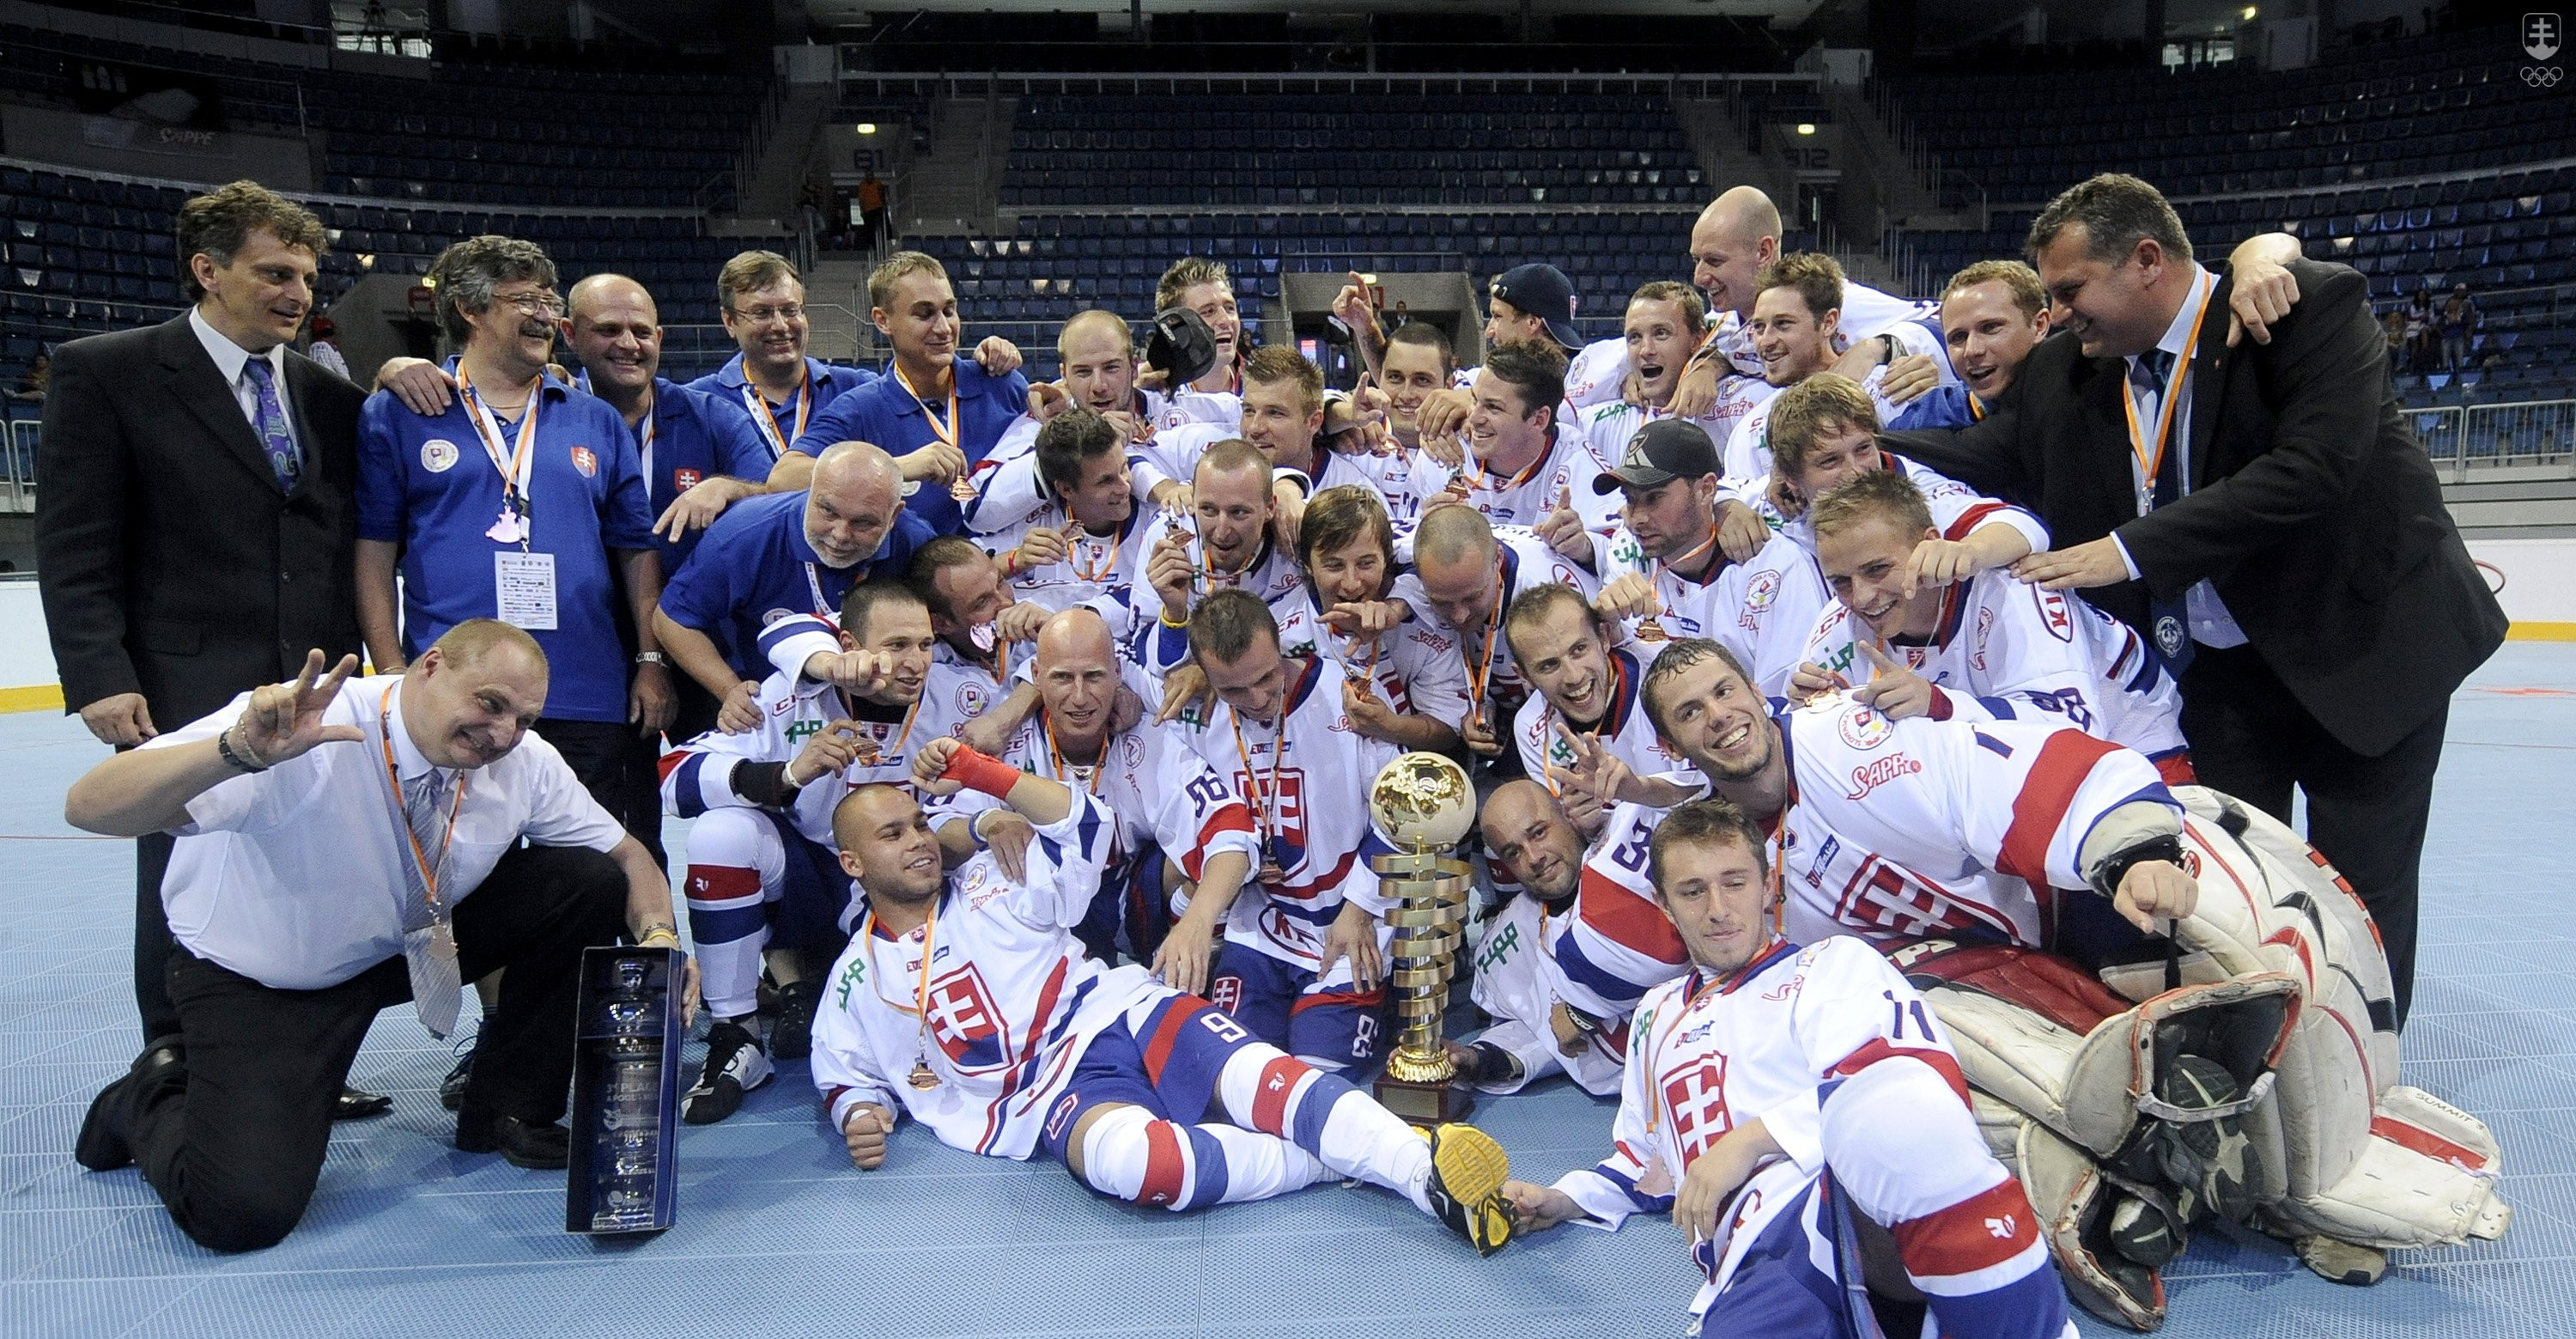 Slovenskí hokejbaloví reprezentanti získali v zápase o 3. miesto proti tímu USA po víťazstve 7:2 bronzové medaily na Majstrovstvách sveta v hokejbale 2011 v Bratislave.